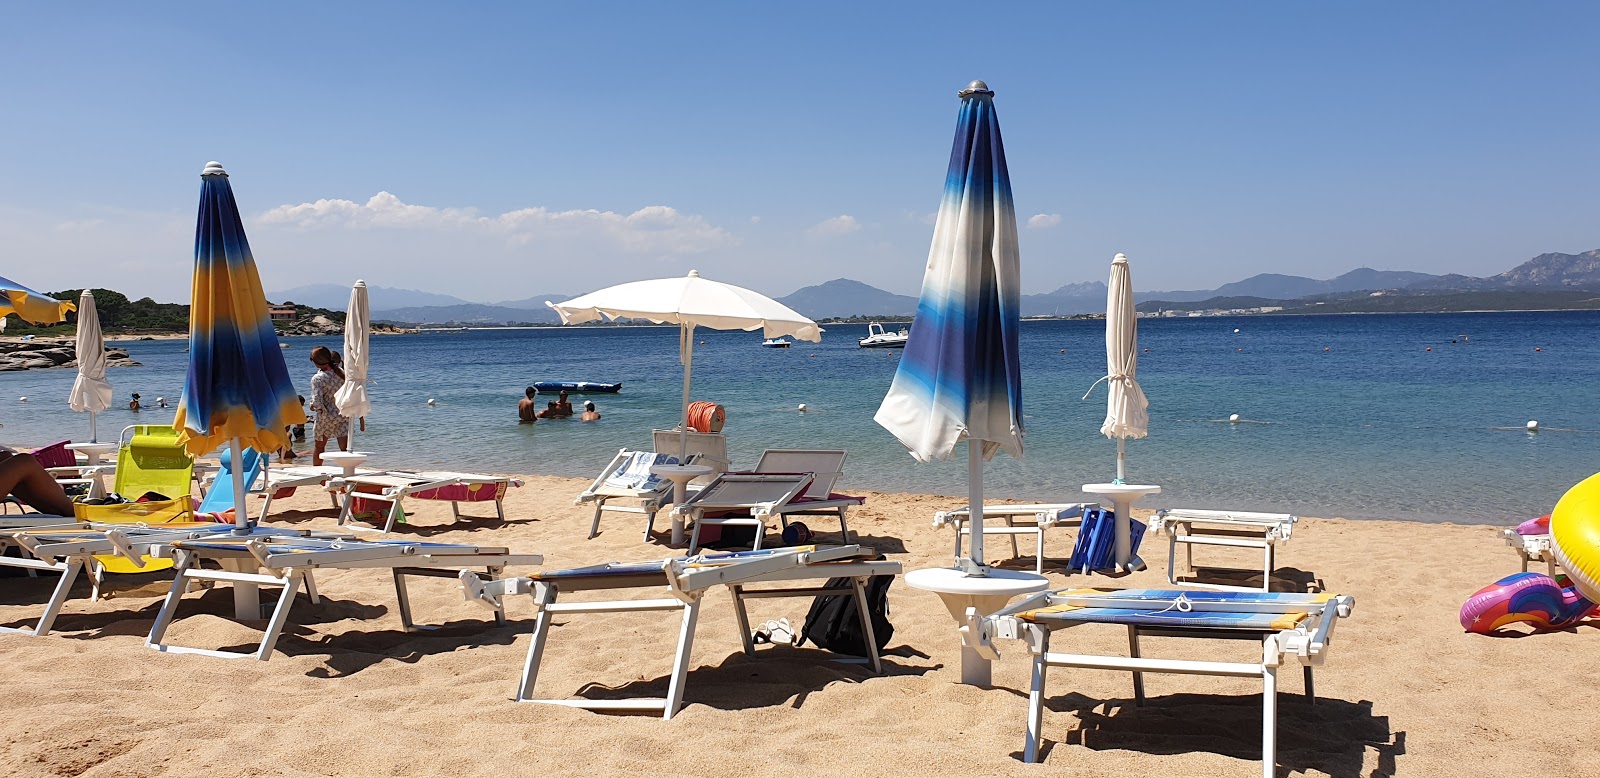 Foto av Spiaggia Su Sarrale med turkos rent vatten yta